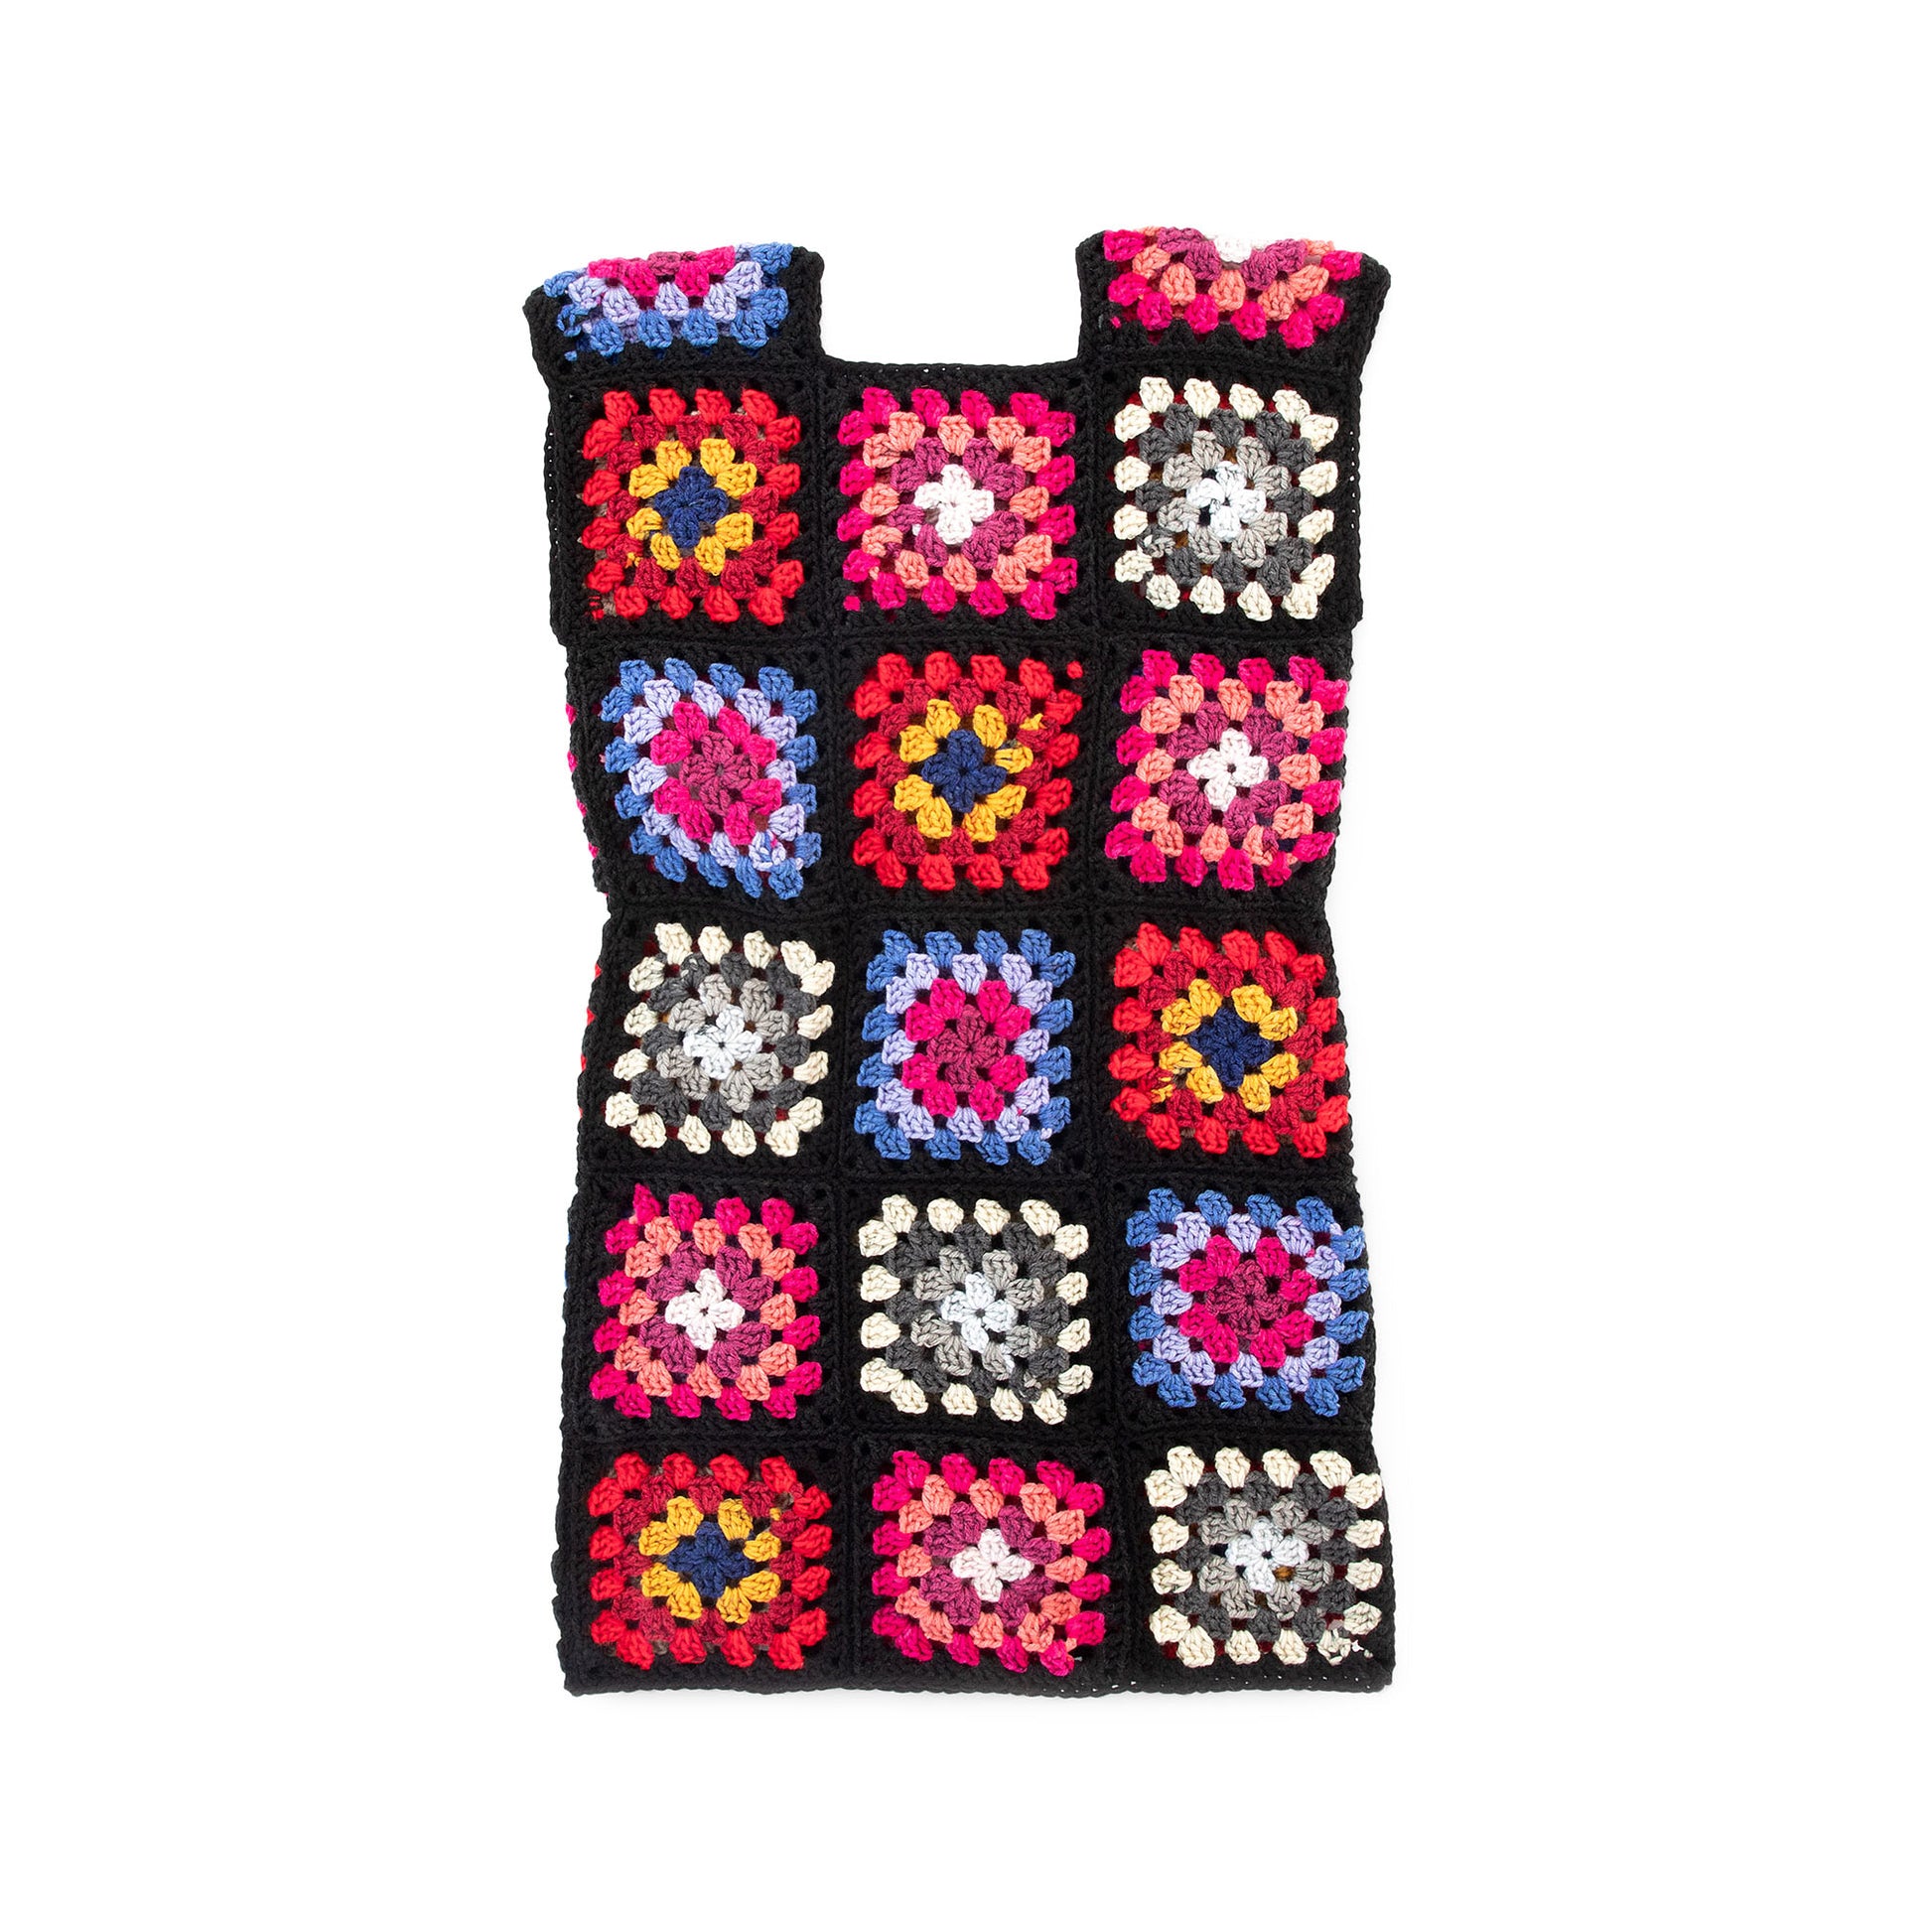 Free Red Heart Best in Dress Crochet Shift Dress Pattern